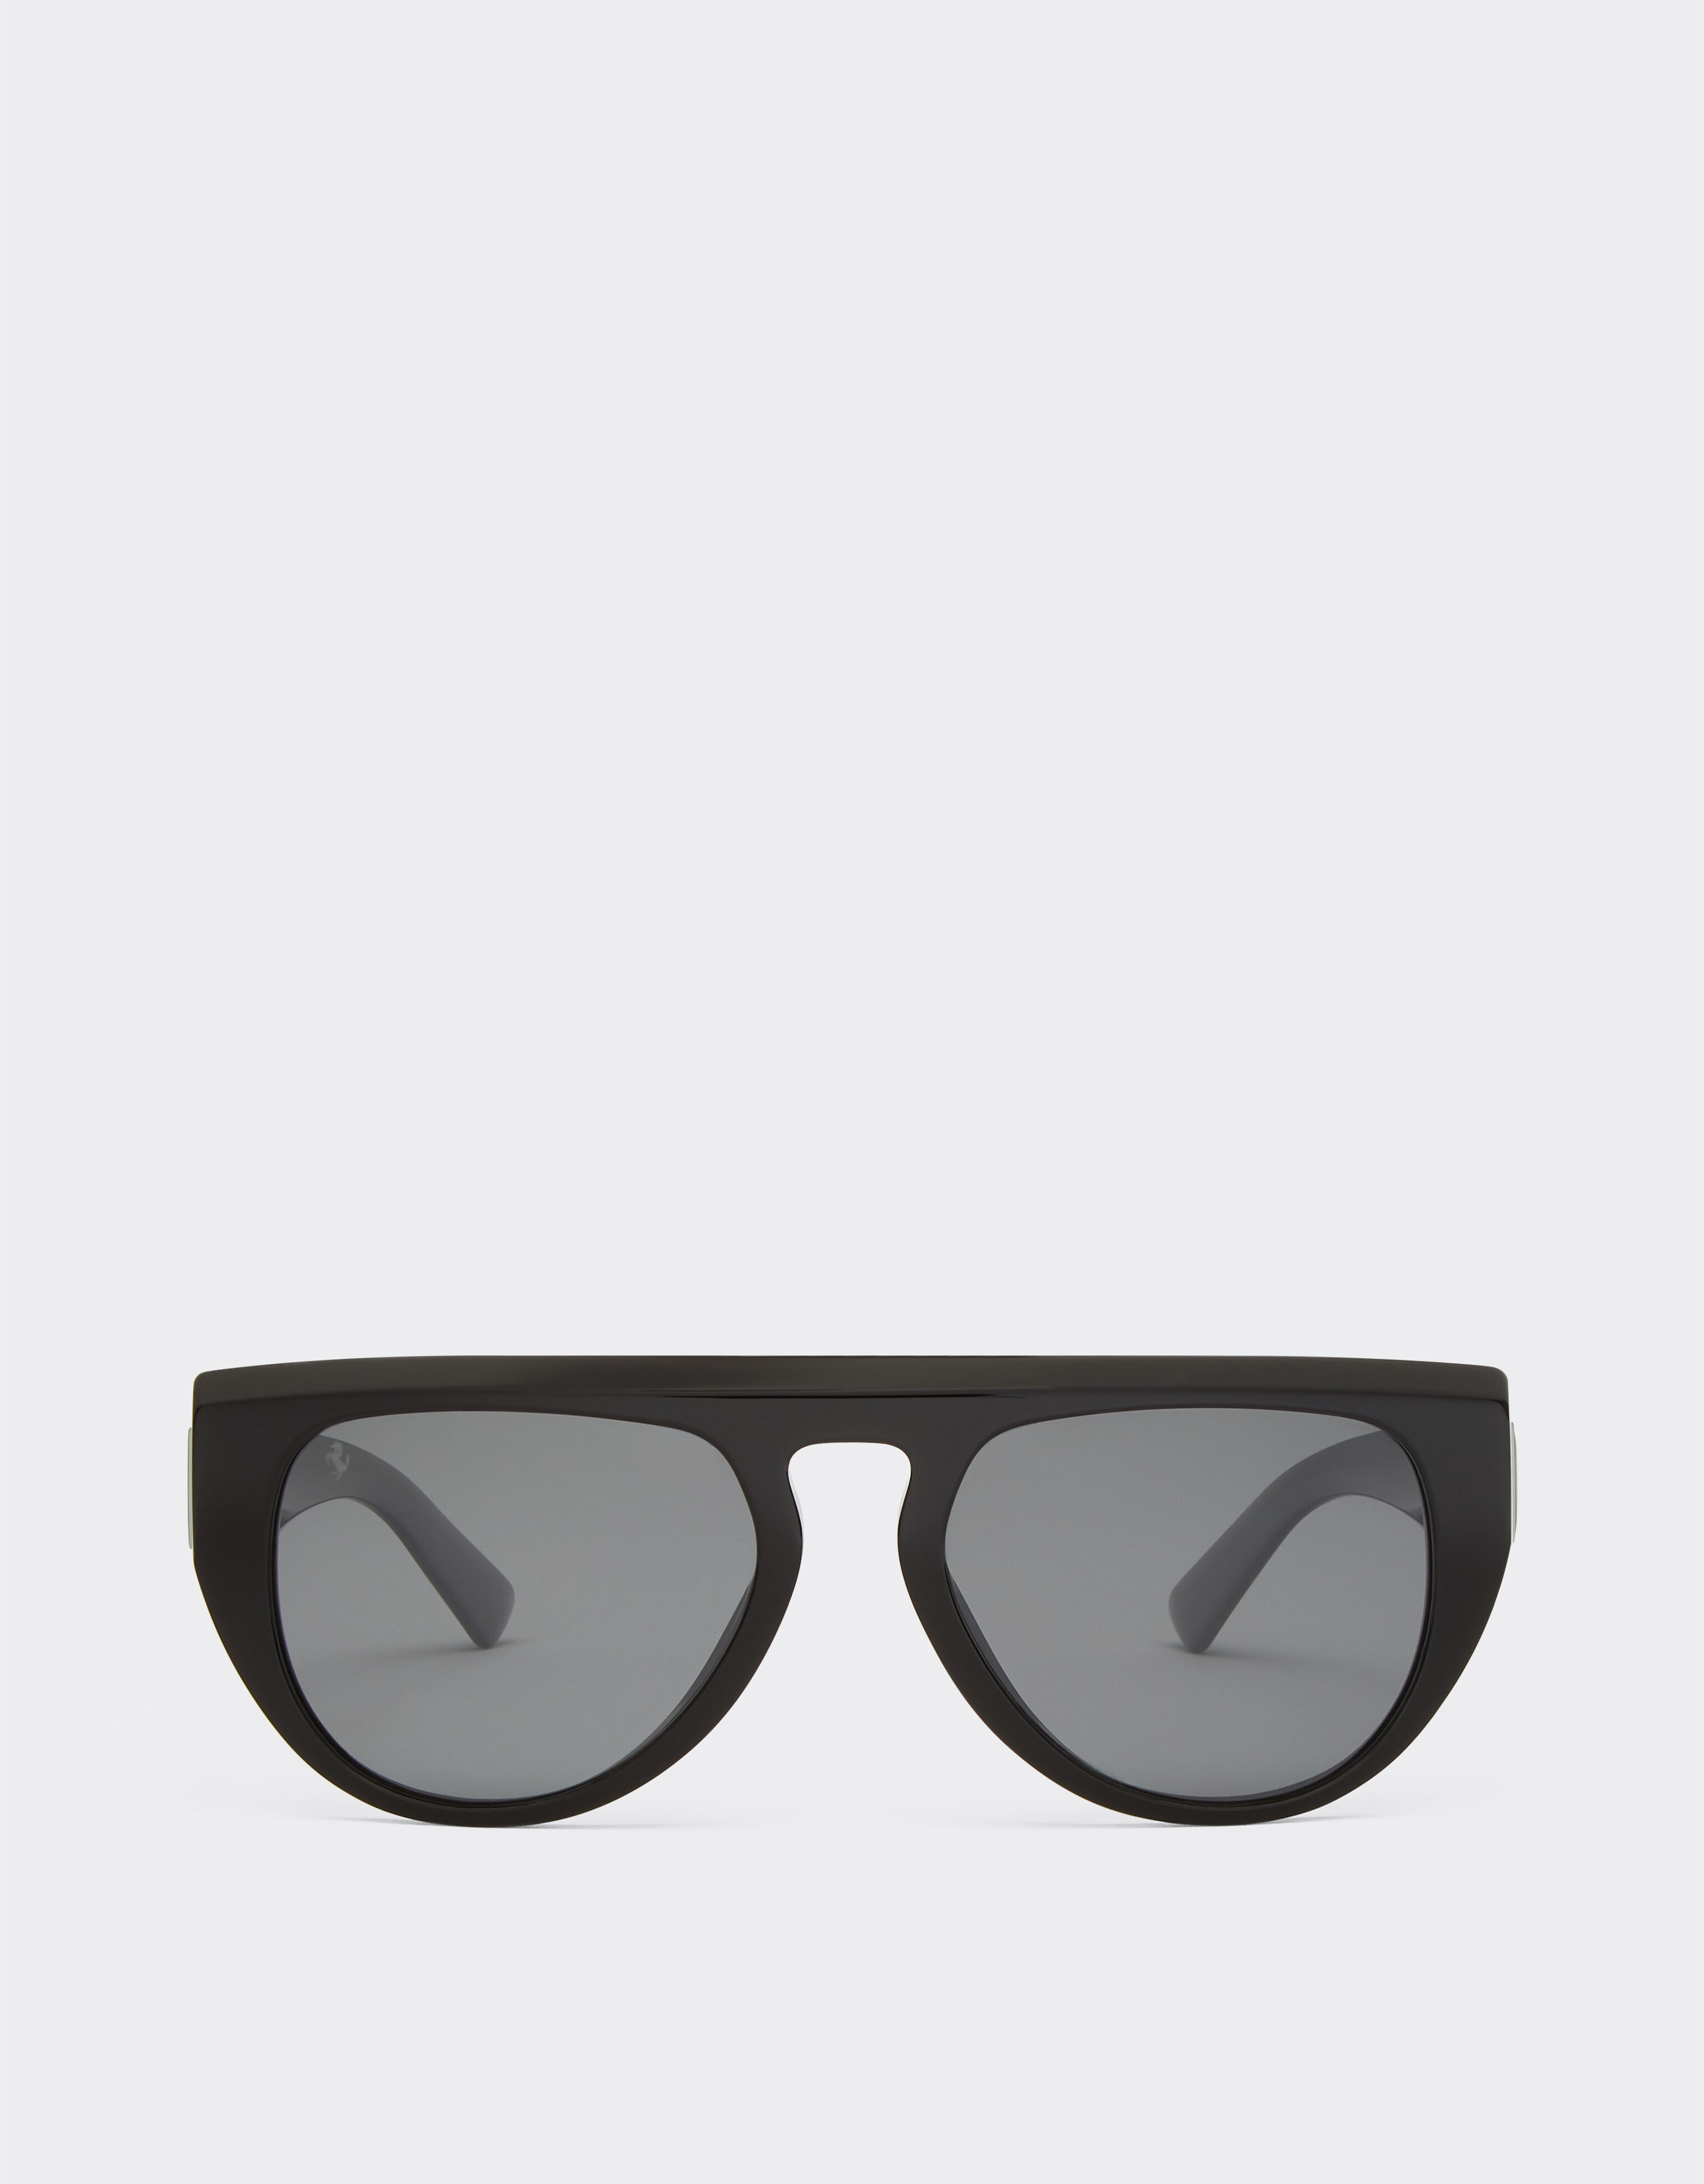 Ferrari Ferrari sunglasses in black acetate with polarised mirror lenses Optical White 48493f